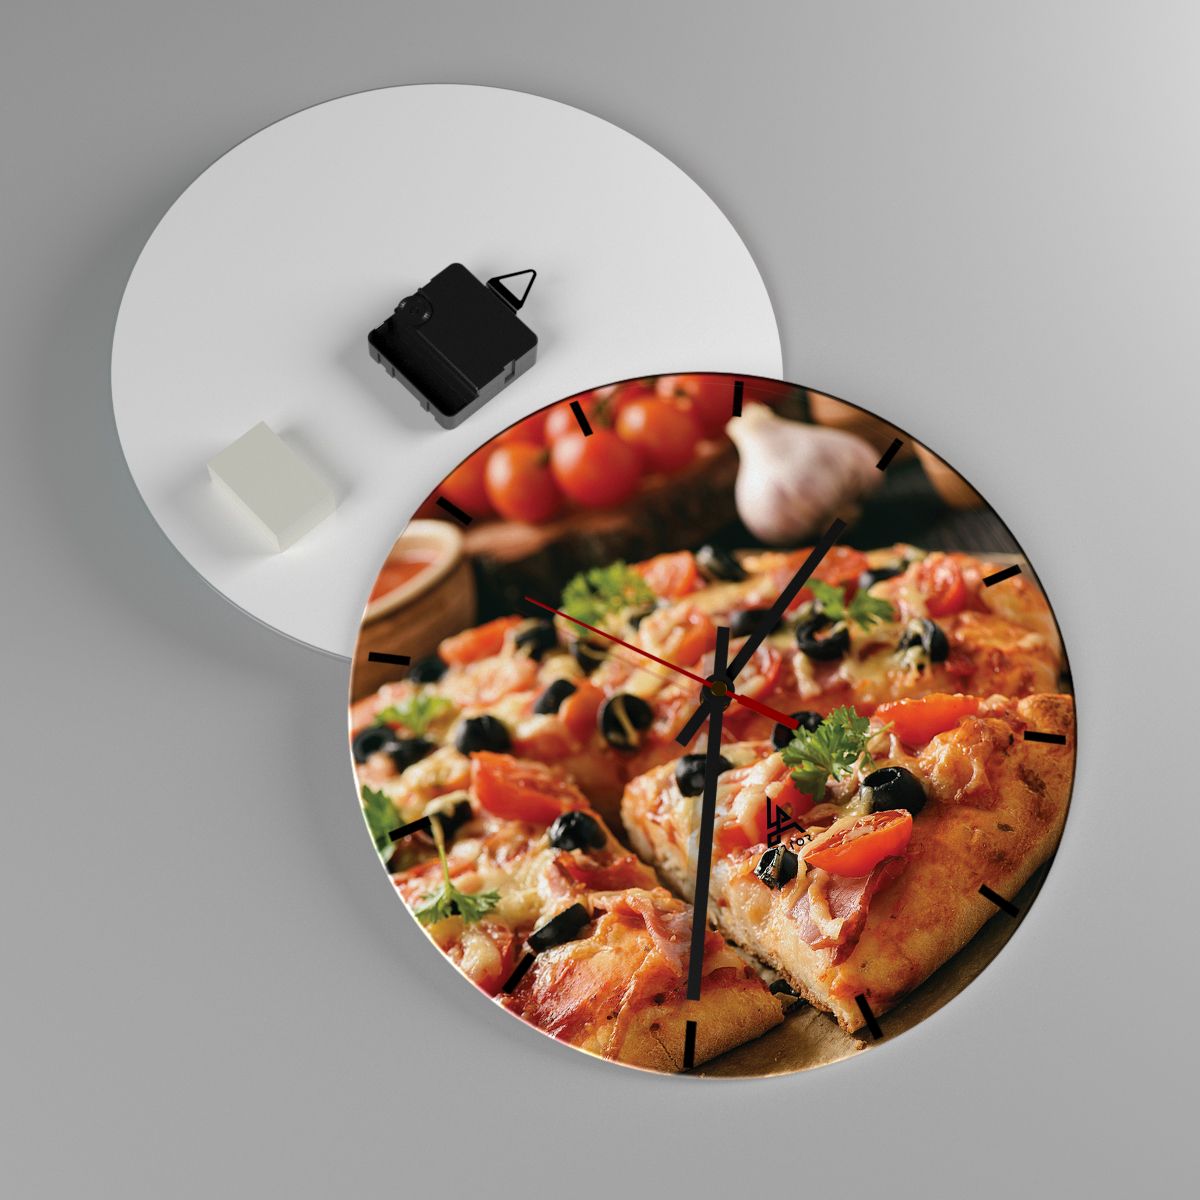 Nástenné hodiny Gastronómia, Nástenné hodiny Pizza, Nástenné hodiny Paradajka, Nástenné hodiny Kuchyňa, Nástenné hodiny Taliansko